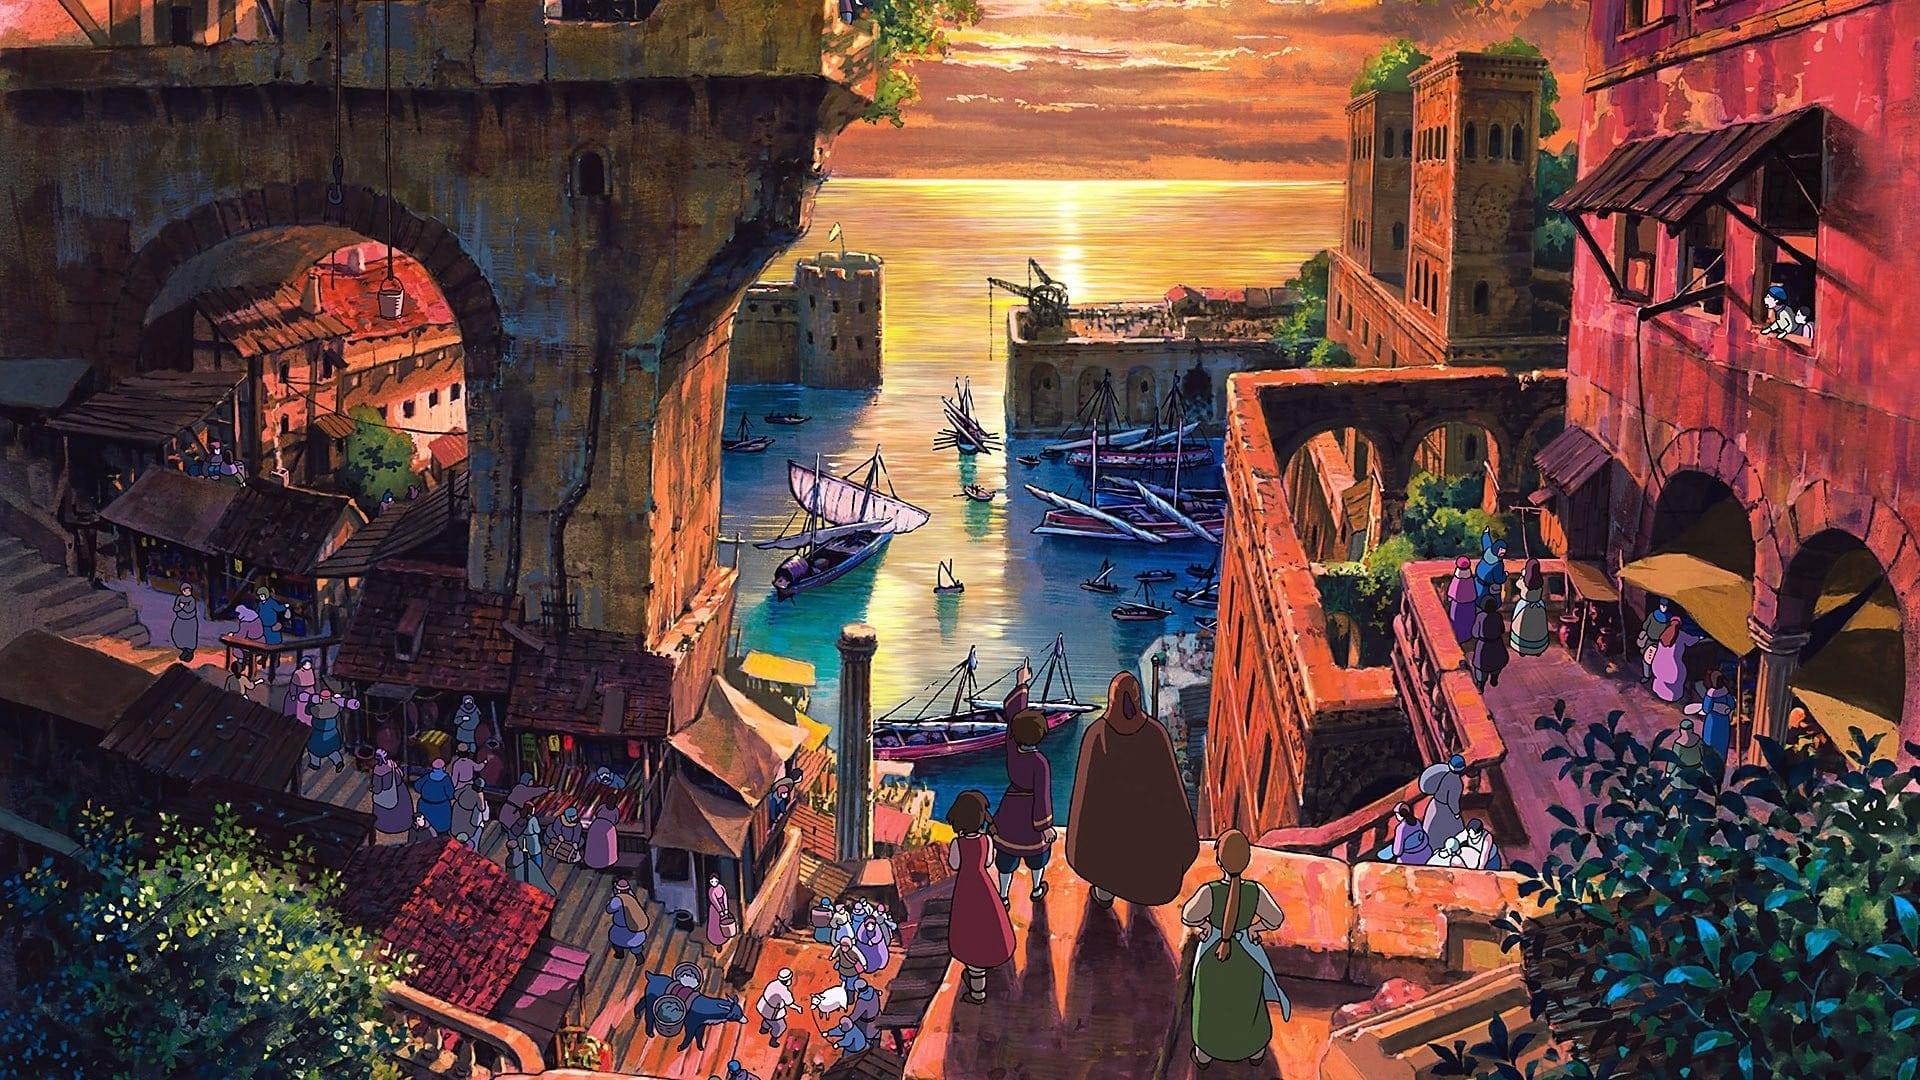 Tales from Earthsea backdrop